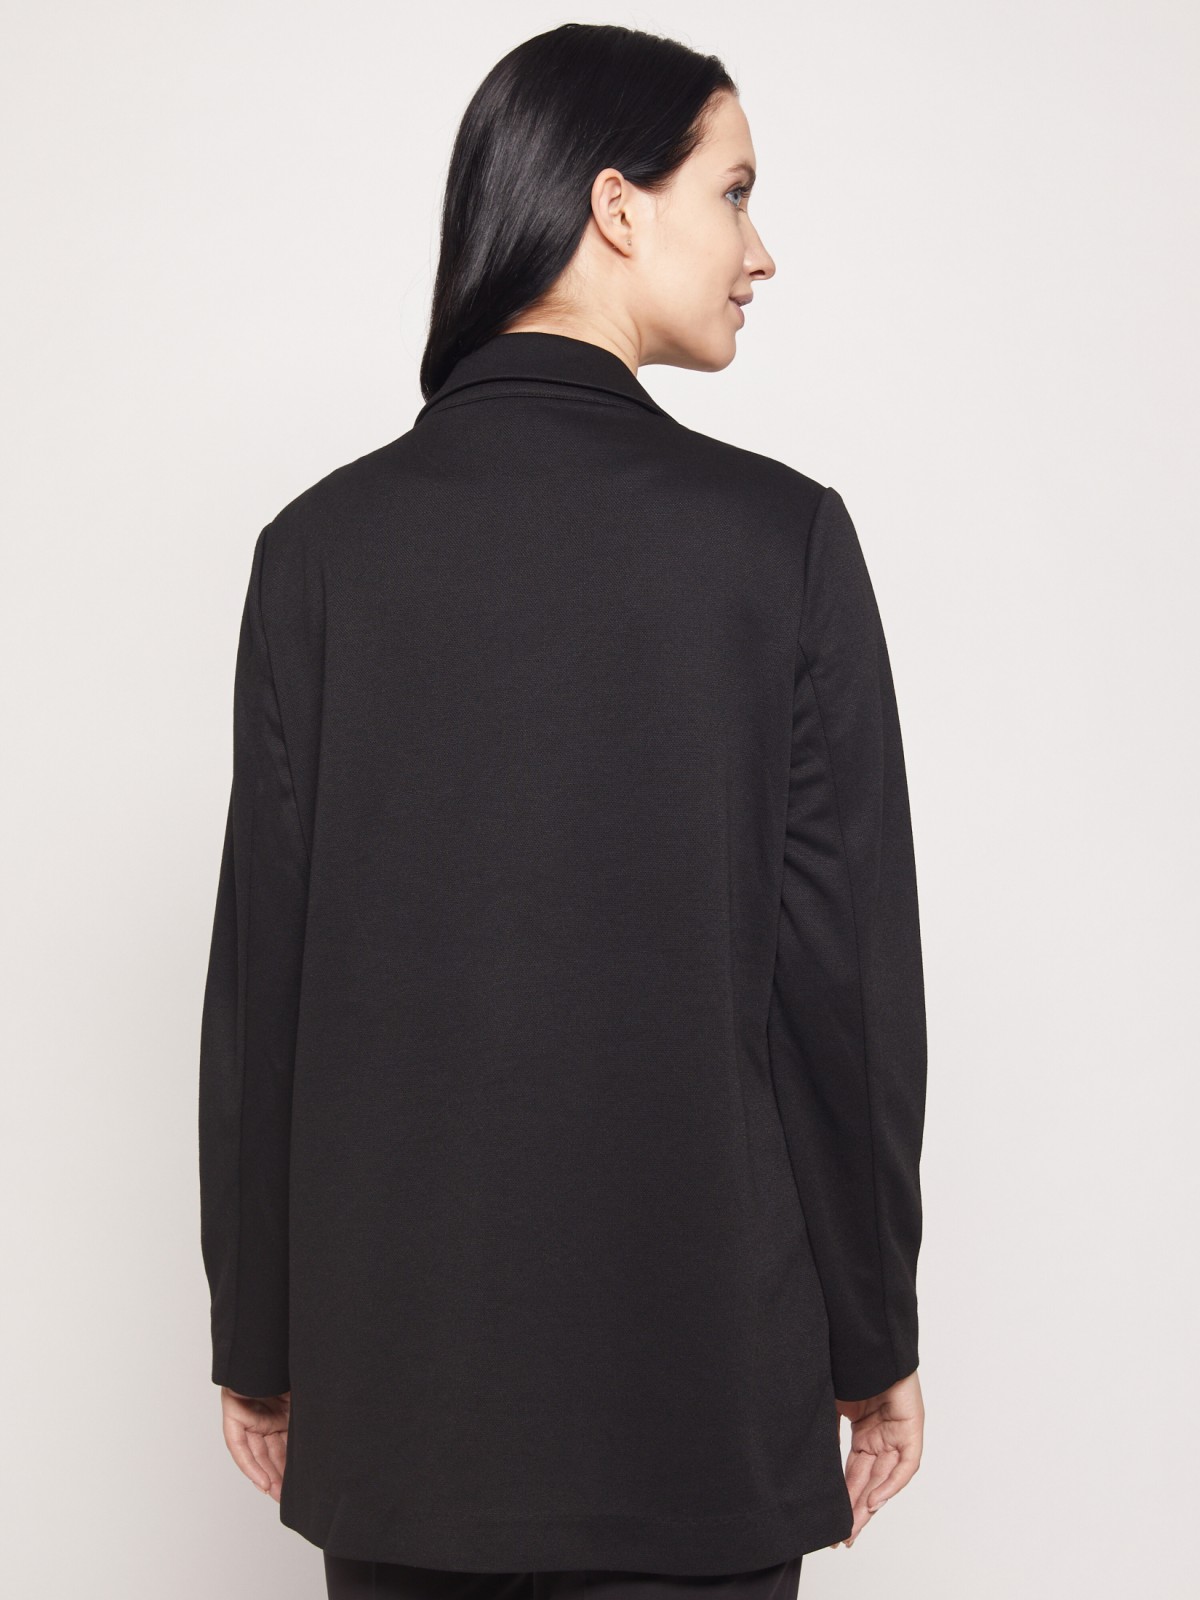 Пиджак без застежки zolla 021315439033, цвет черный, размер S - фото 3